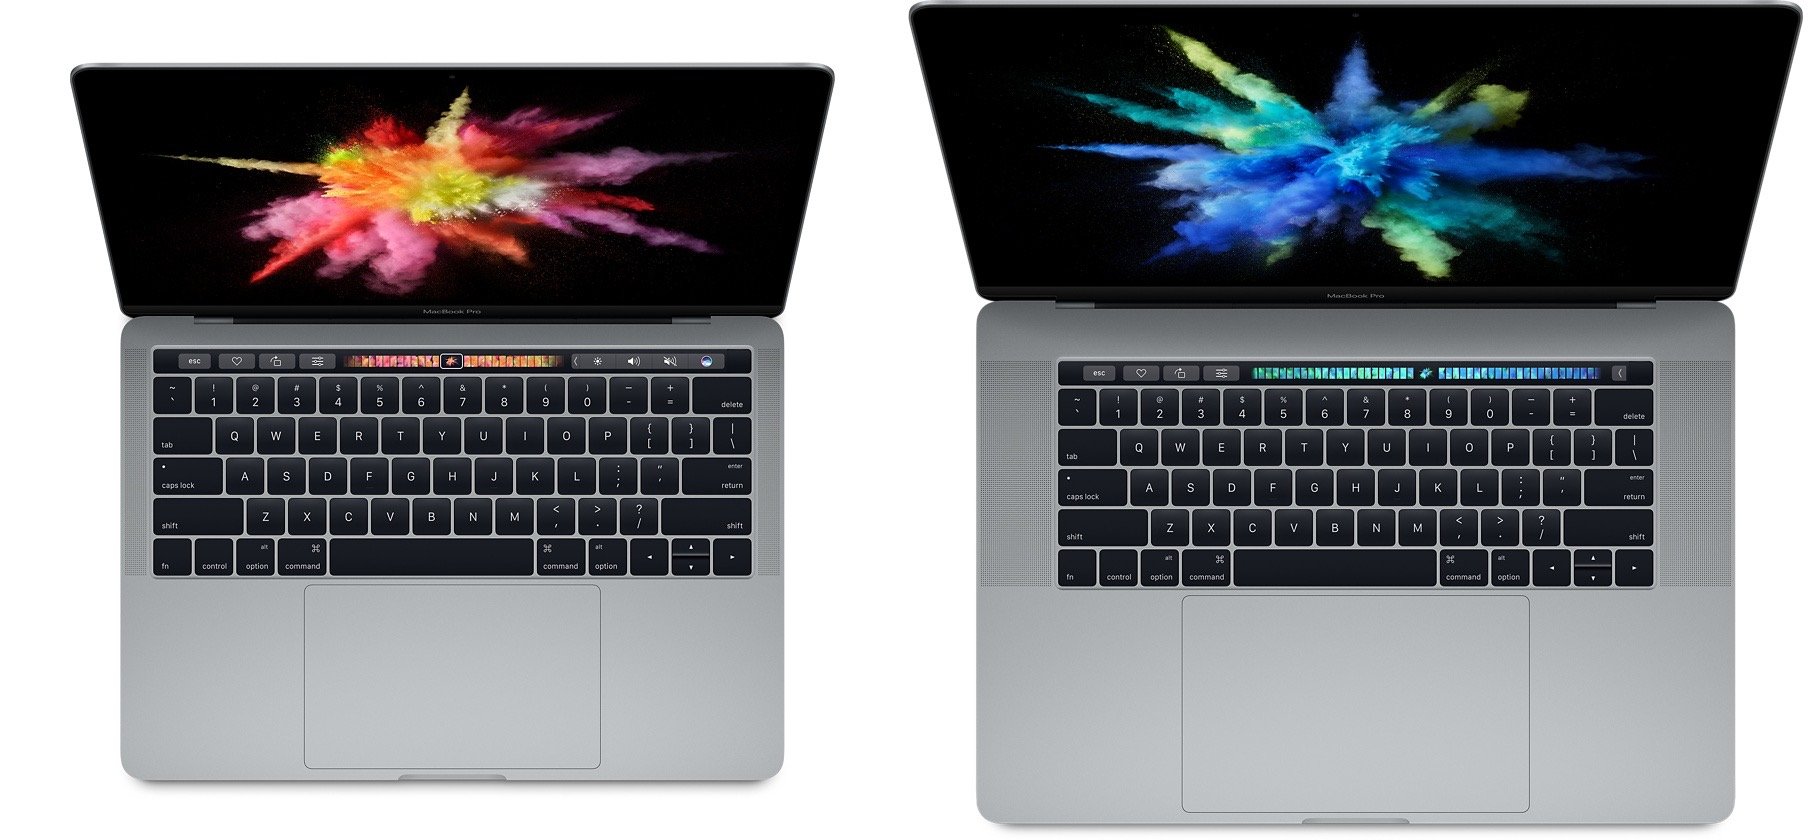 2016 13-inch MacBook Pro vs 15-inch MacBook Pro